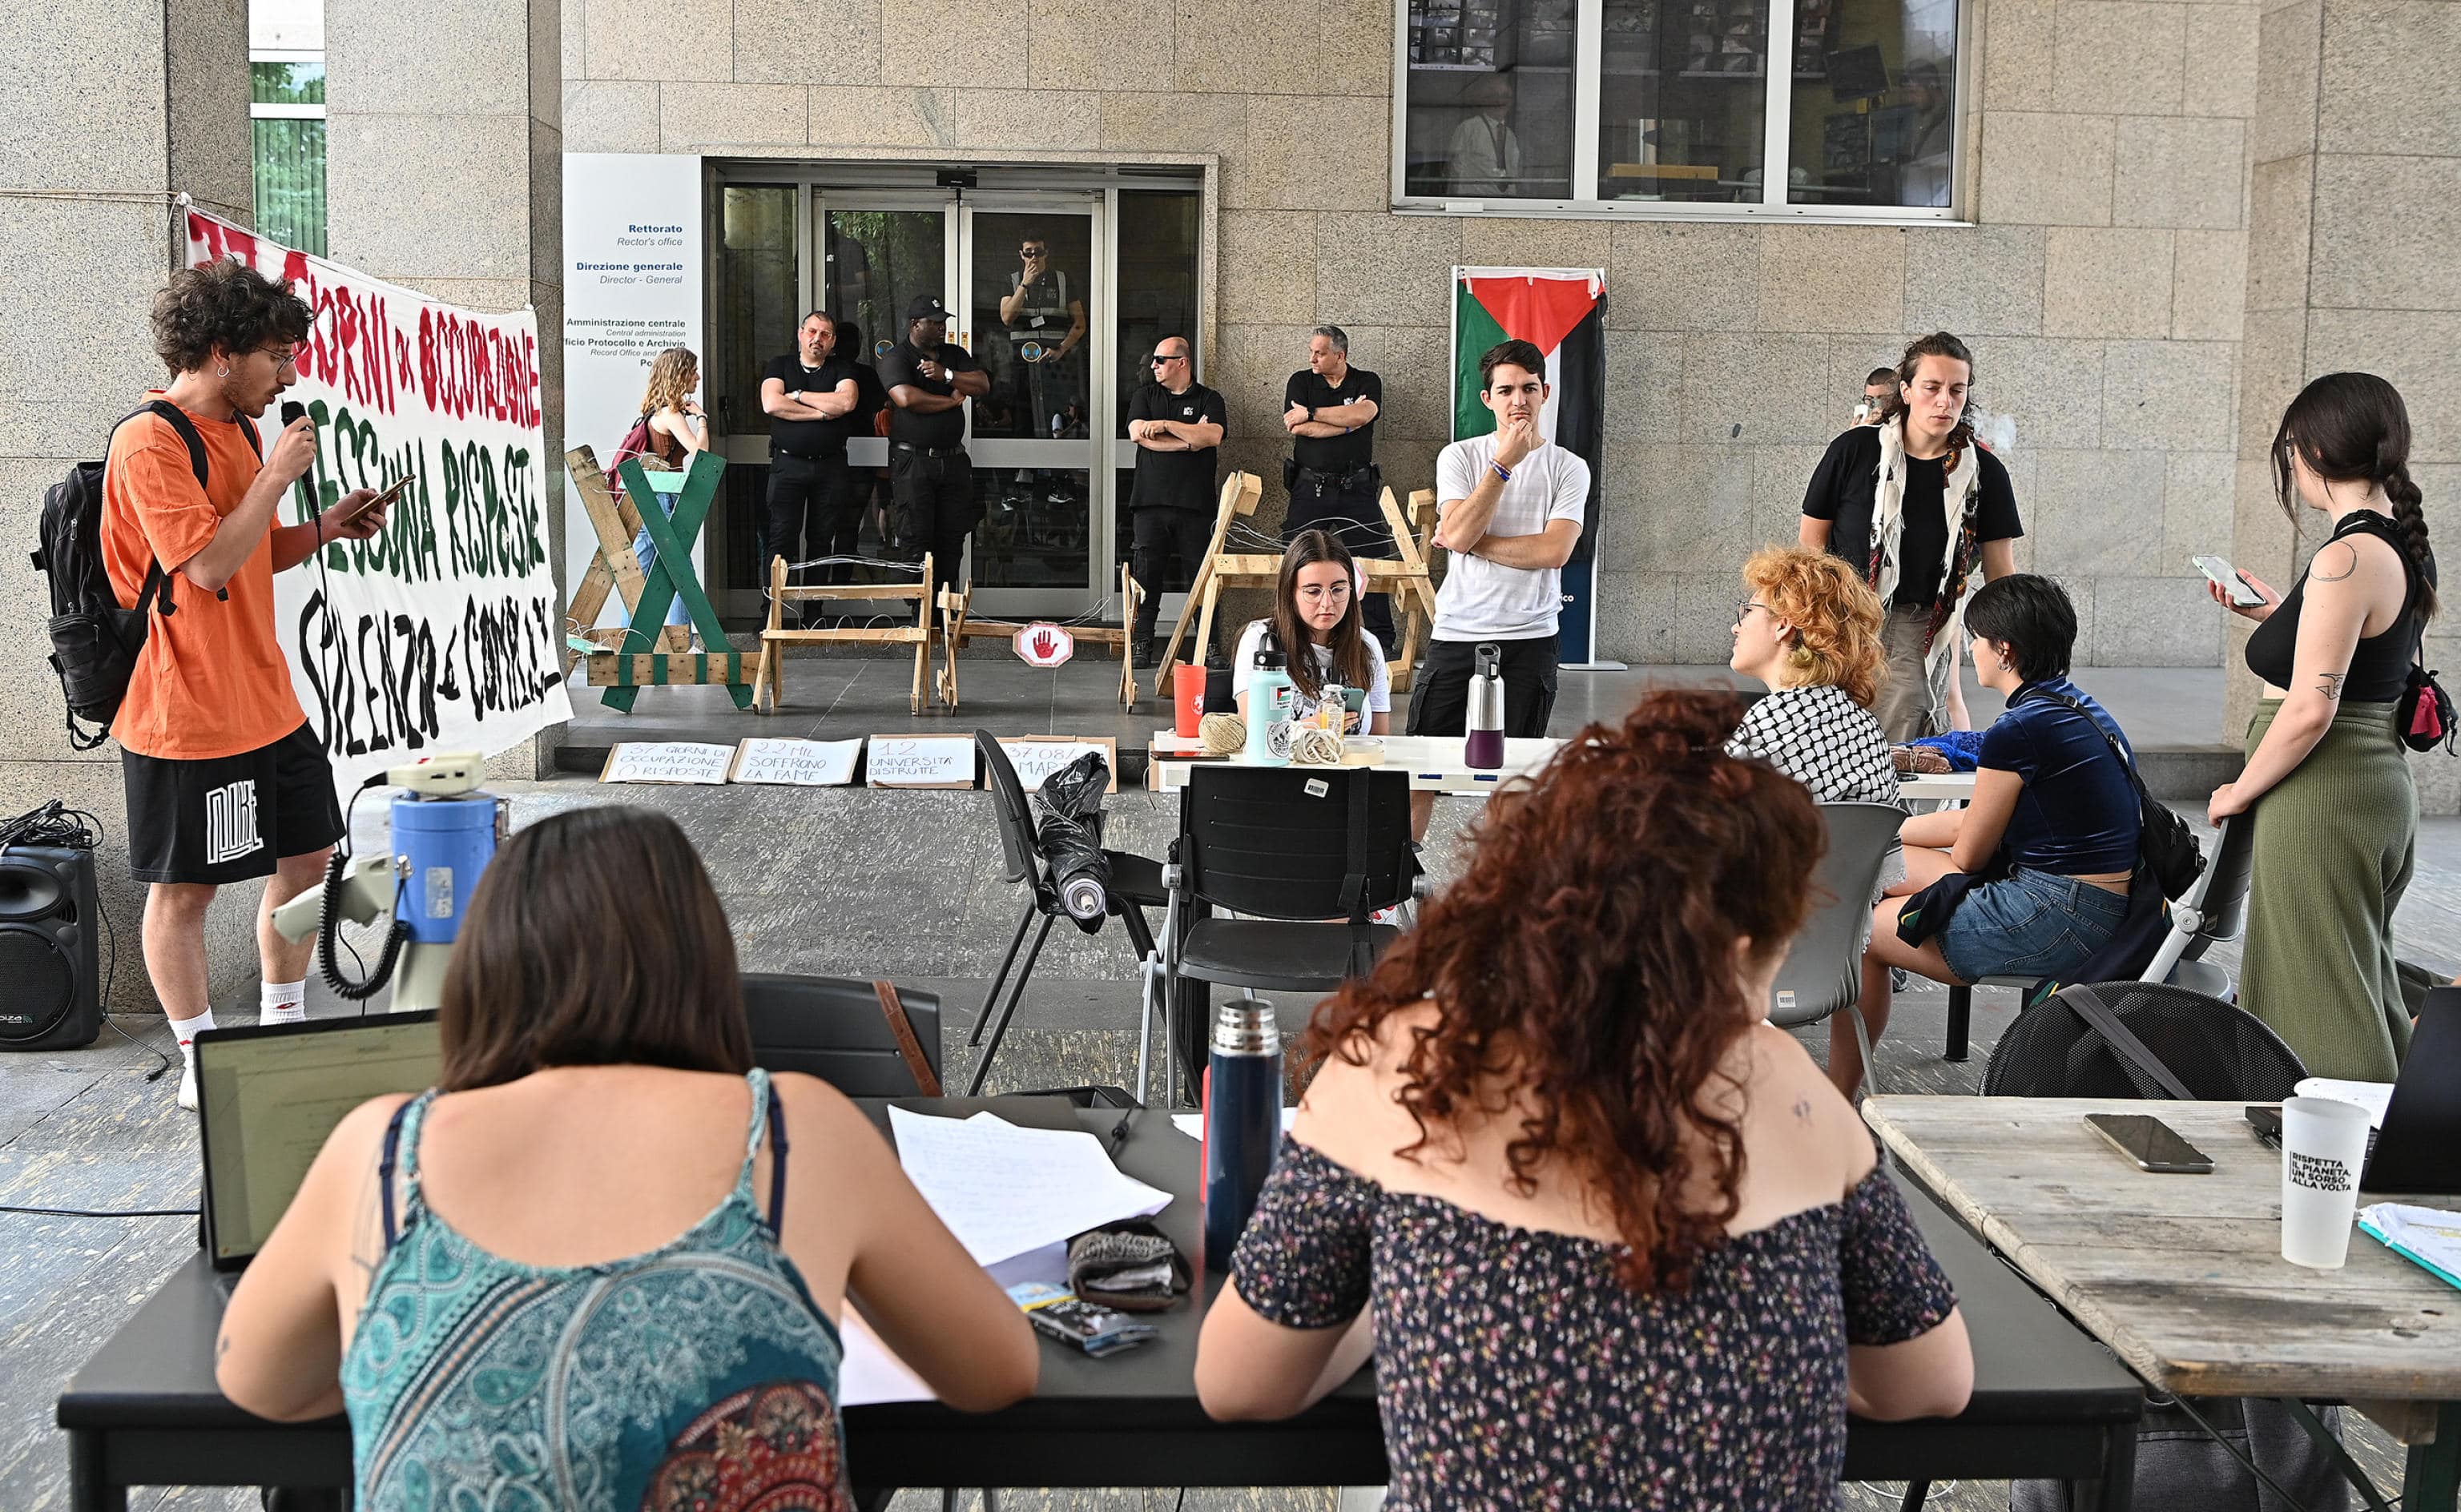 Studenti pro Palestina occupano il Politecnico sbarrando lingresso con transenne di legno, Torino, 19 giugno 2024.
ANSA/ALESSANDRO DI MARCO